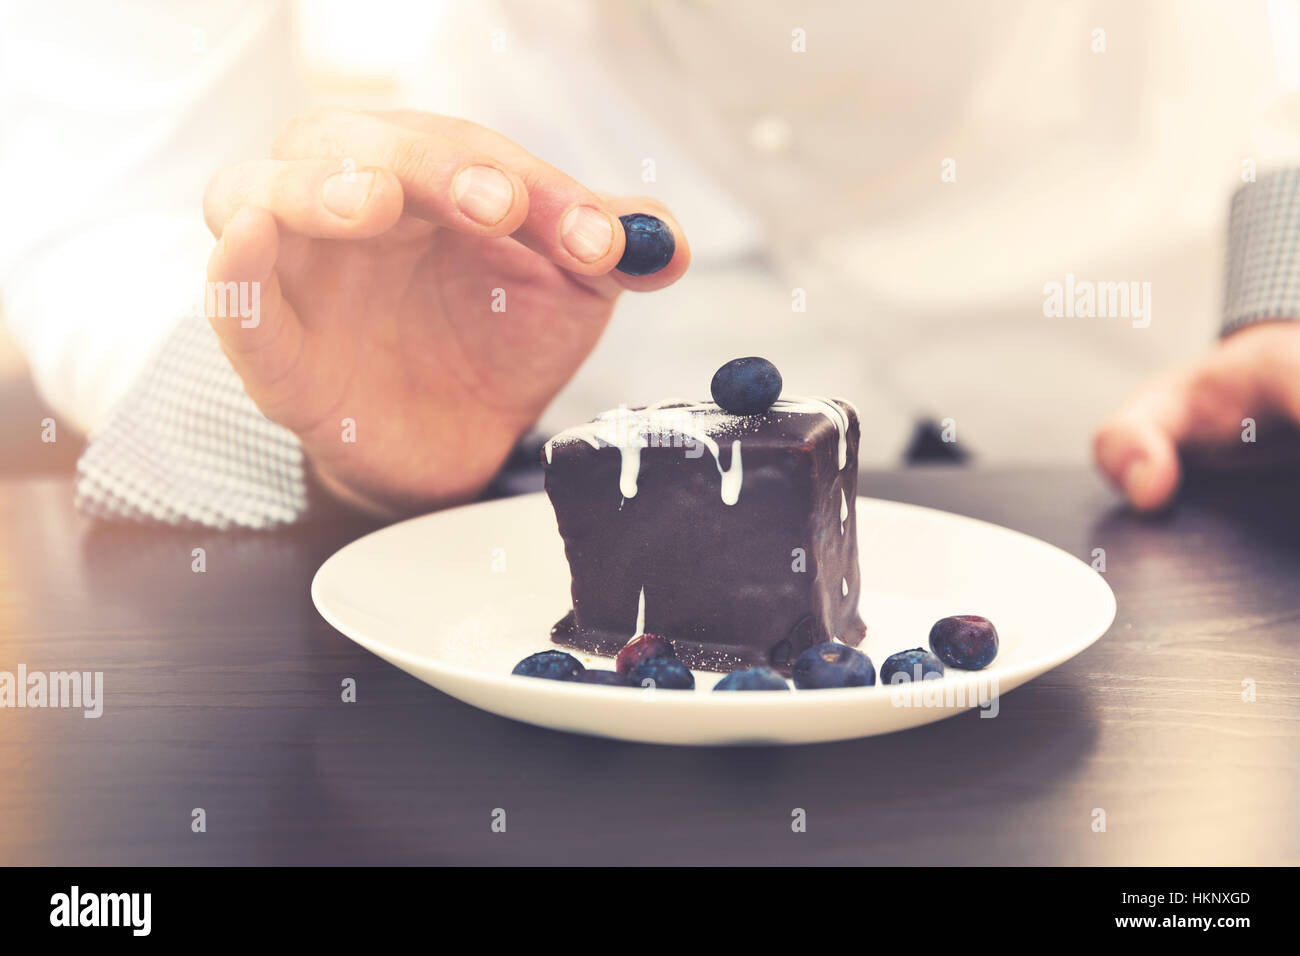 Chef cuisinier de préparer le dessert, mettre sur un gâteau au chocolat aux bleuets Banque D'Images